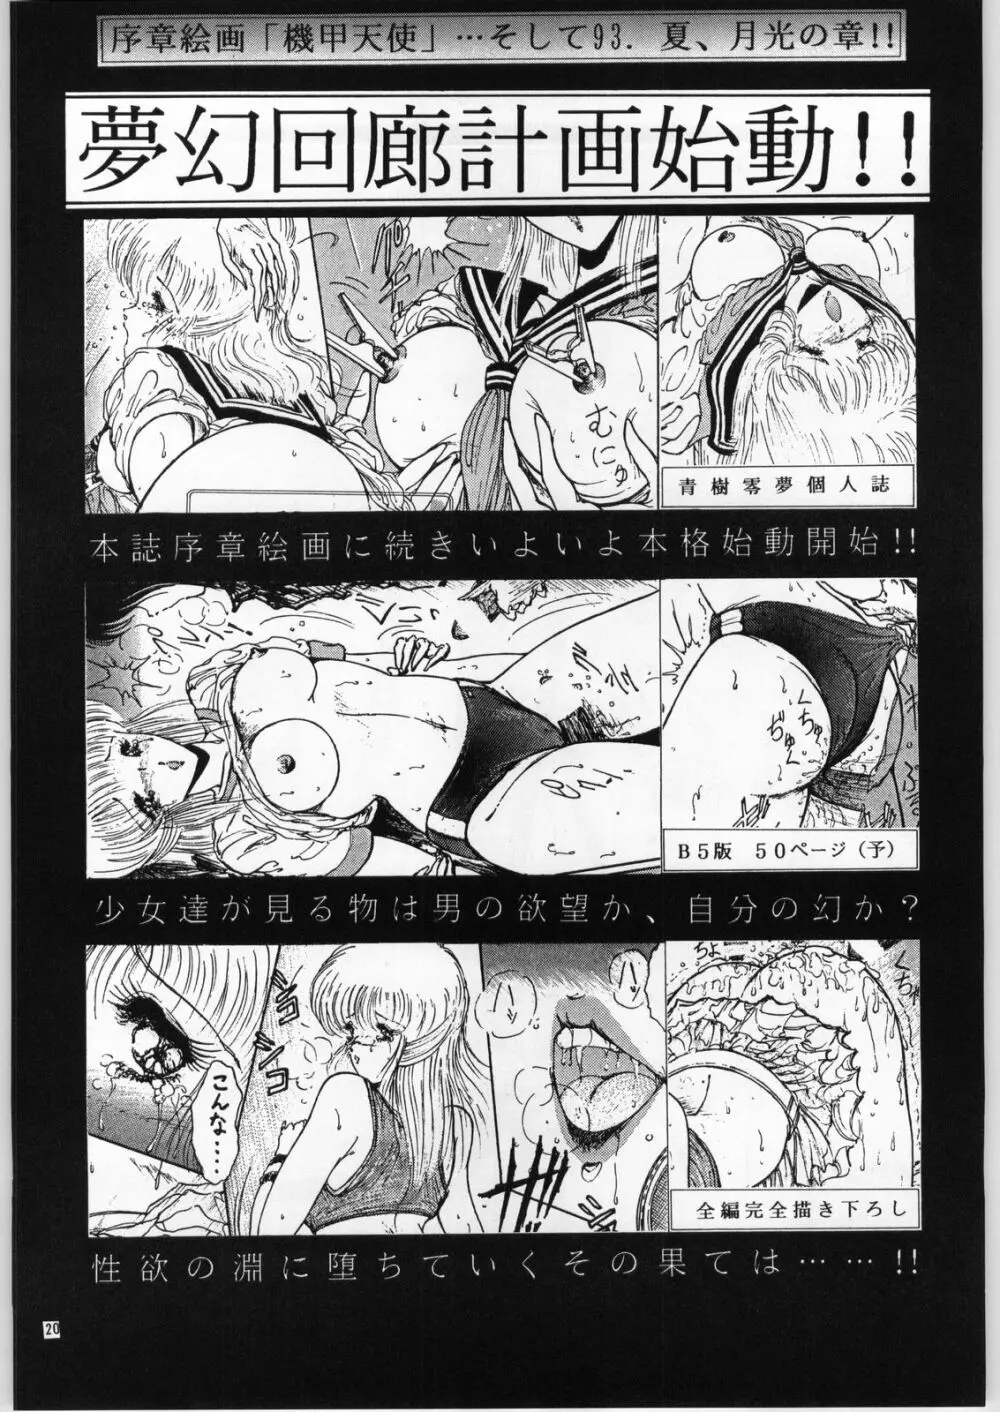 夢幻回廊VOL. 1 序章絵画 機甲天使 20ページ